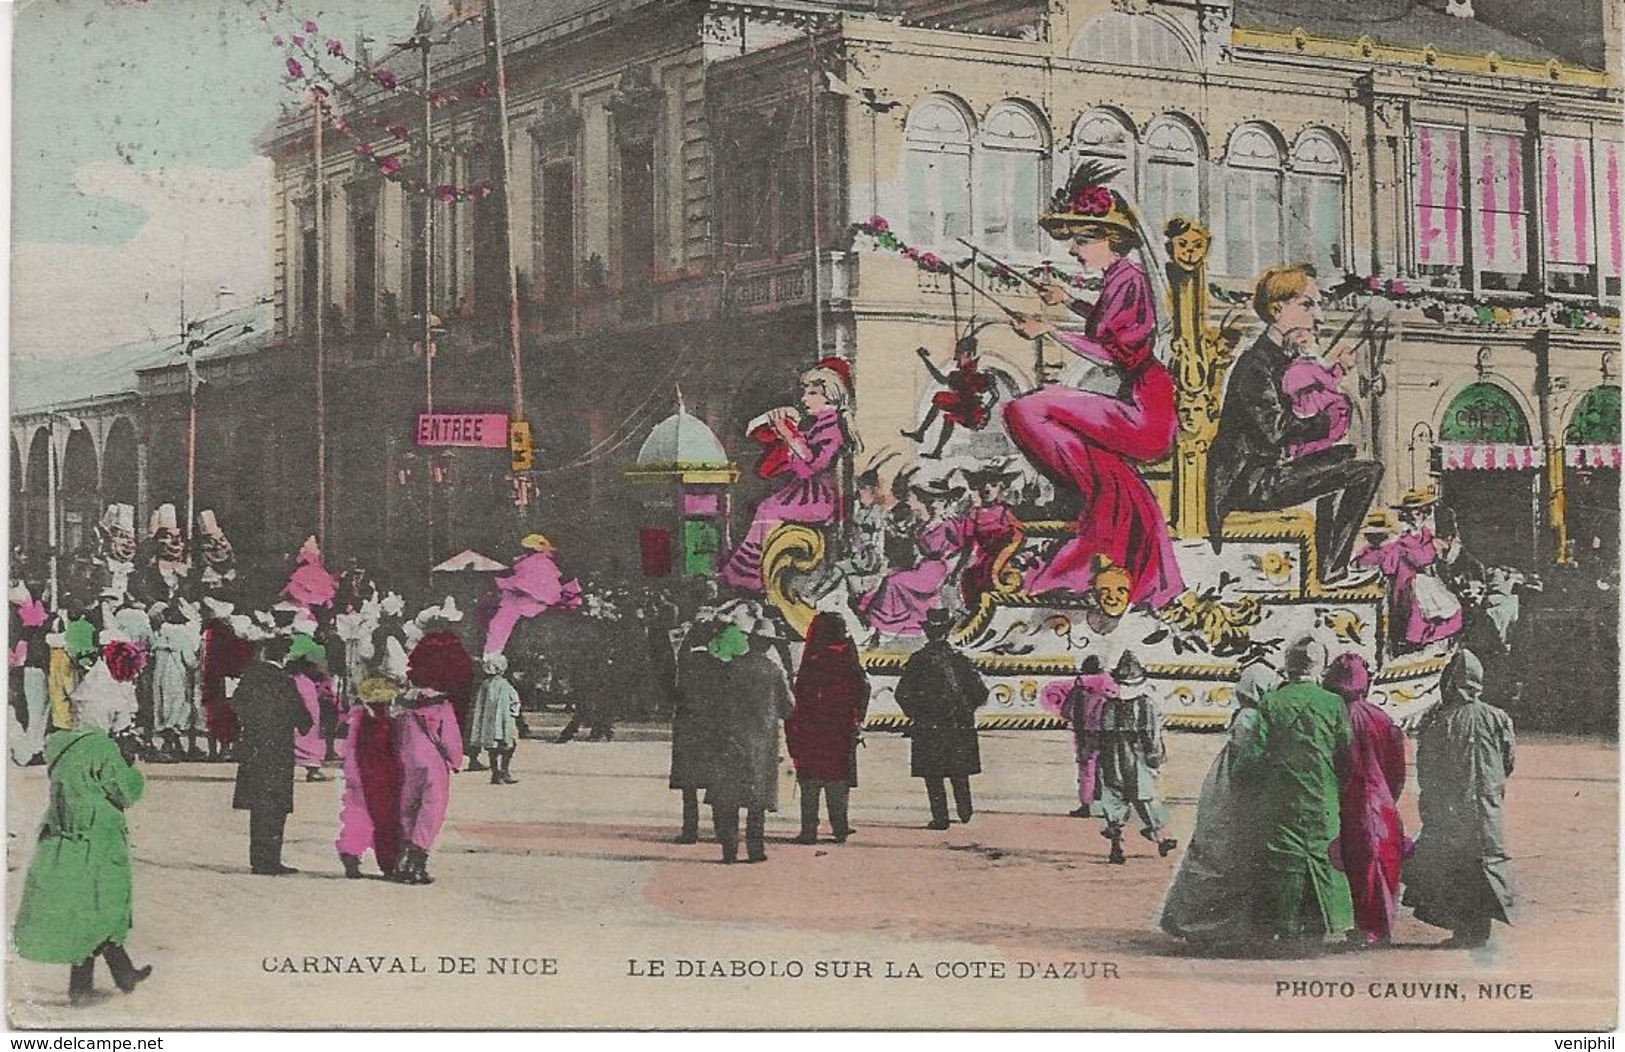 CARTE CARNAVAL DE NICE AFFRANCHIE TIMBRE DE MONACO N° 22 - ANNEE 1908 - Oblitérés